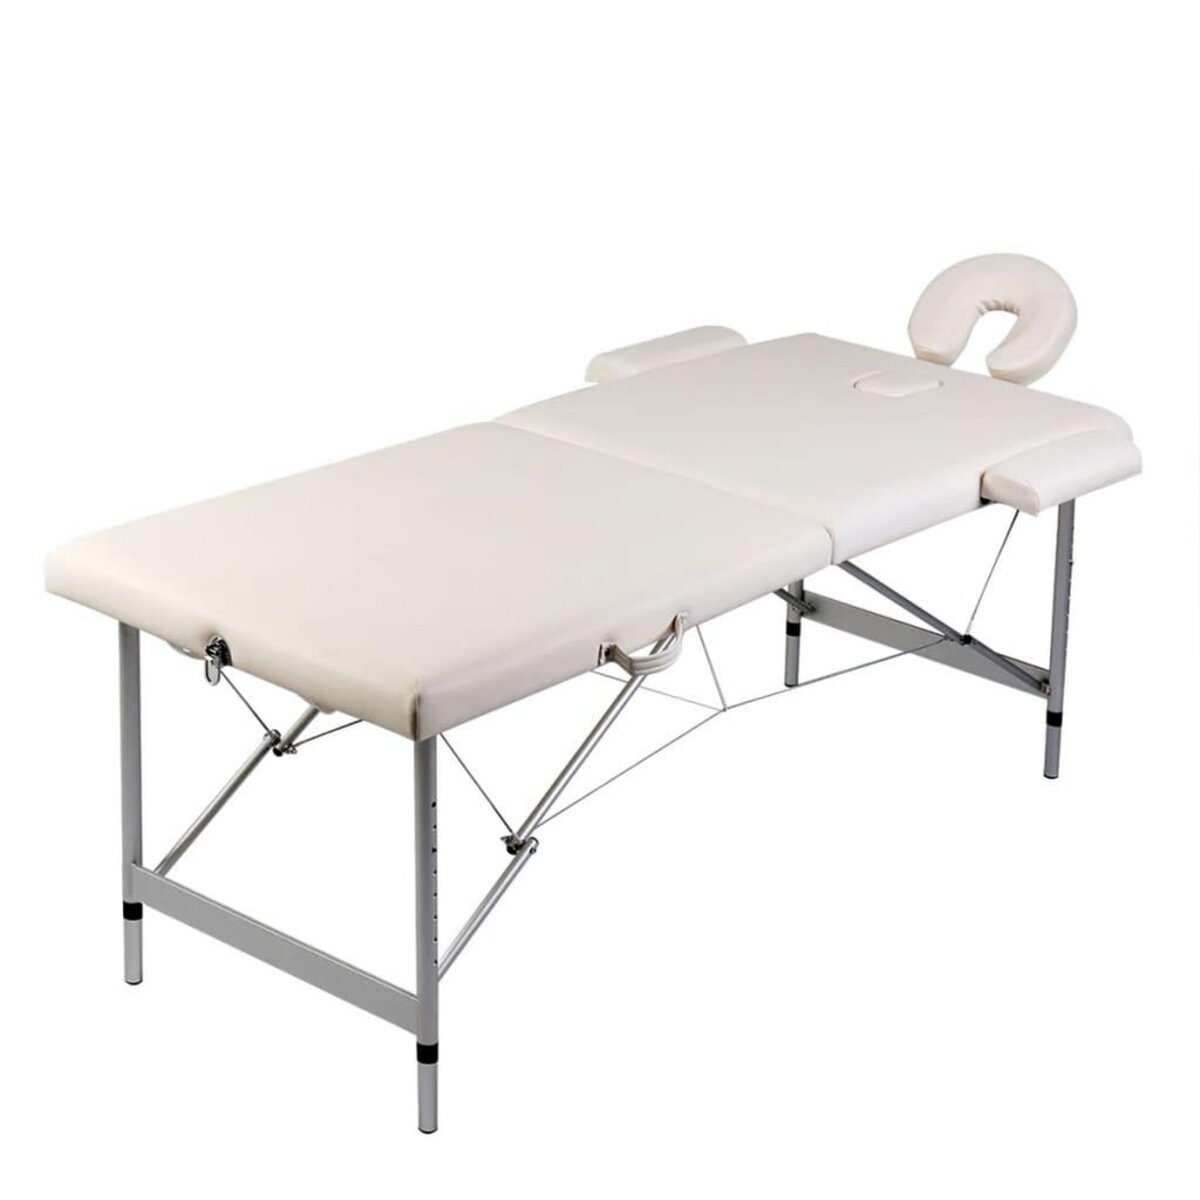 VIDAXL Table de massage pliable Blanc creme 2 zones cadre en aluminium